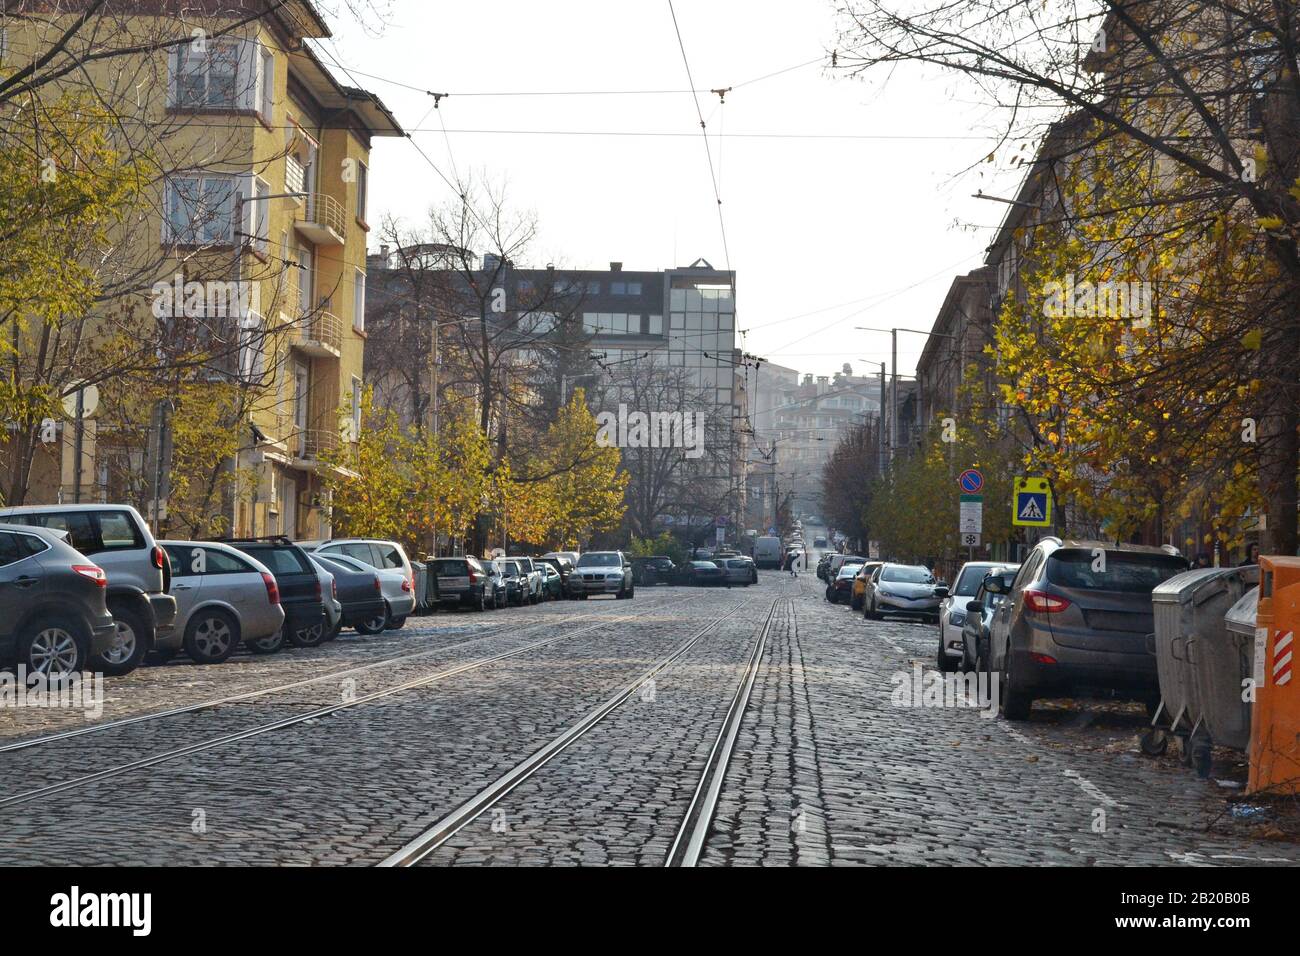 Fahren Sie auf einer asphaltierten Straße in Sofia, der Hauptstadt Bulgariens. Stockfoto